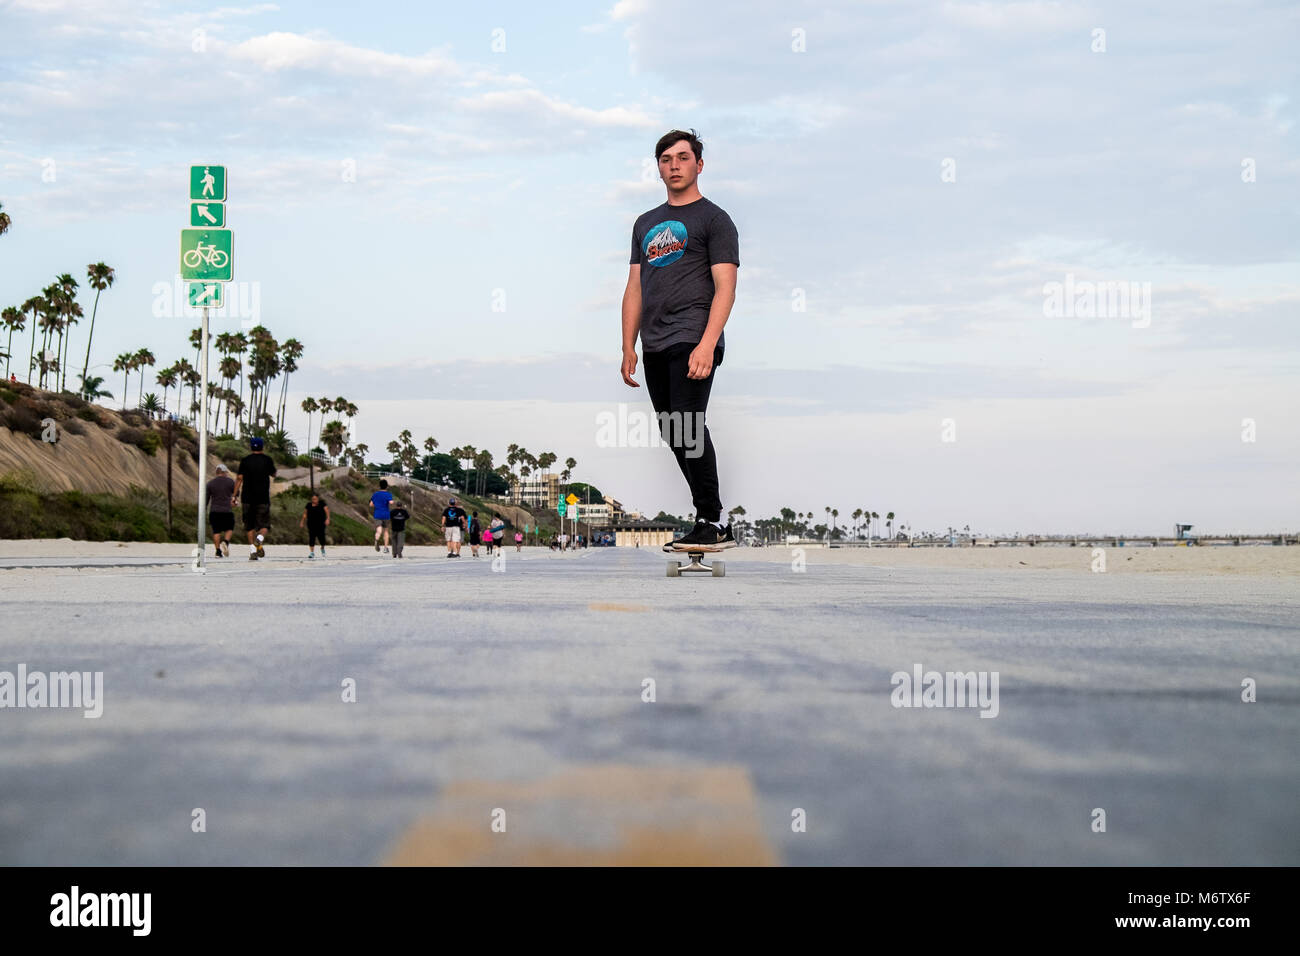 Vue faible à Long Beach de patineur venant vers la caméra Banque D'Images